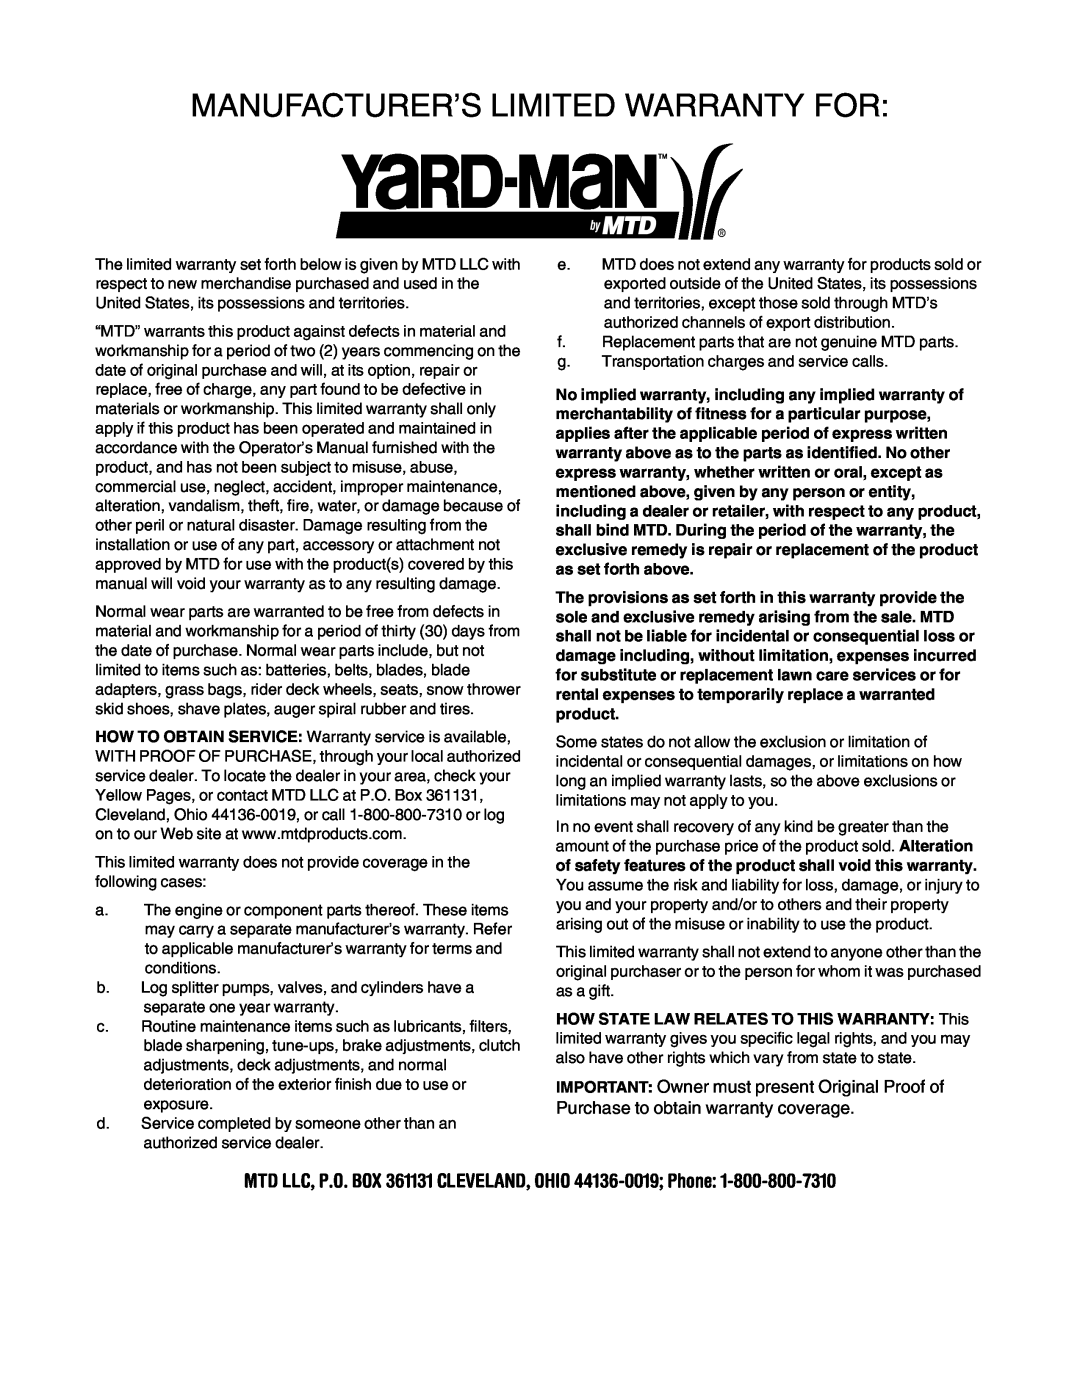 Yard-Man 5KL manual Manufacturer’S Limited Warranty For 